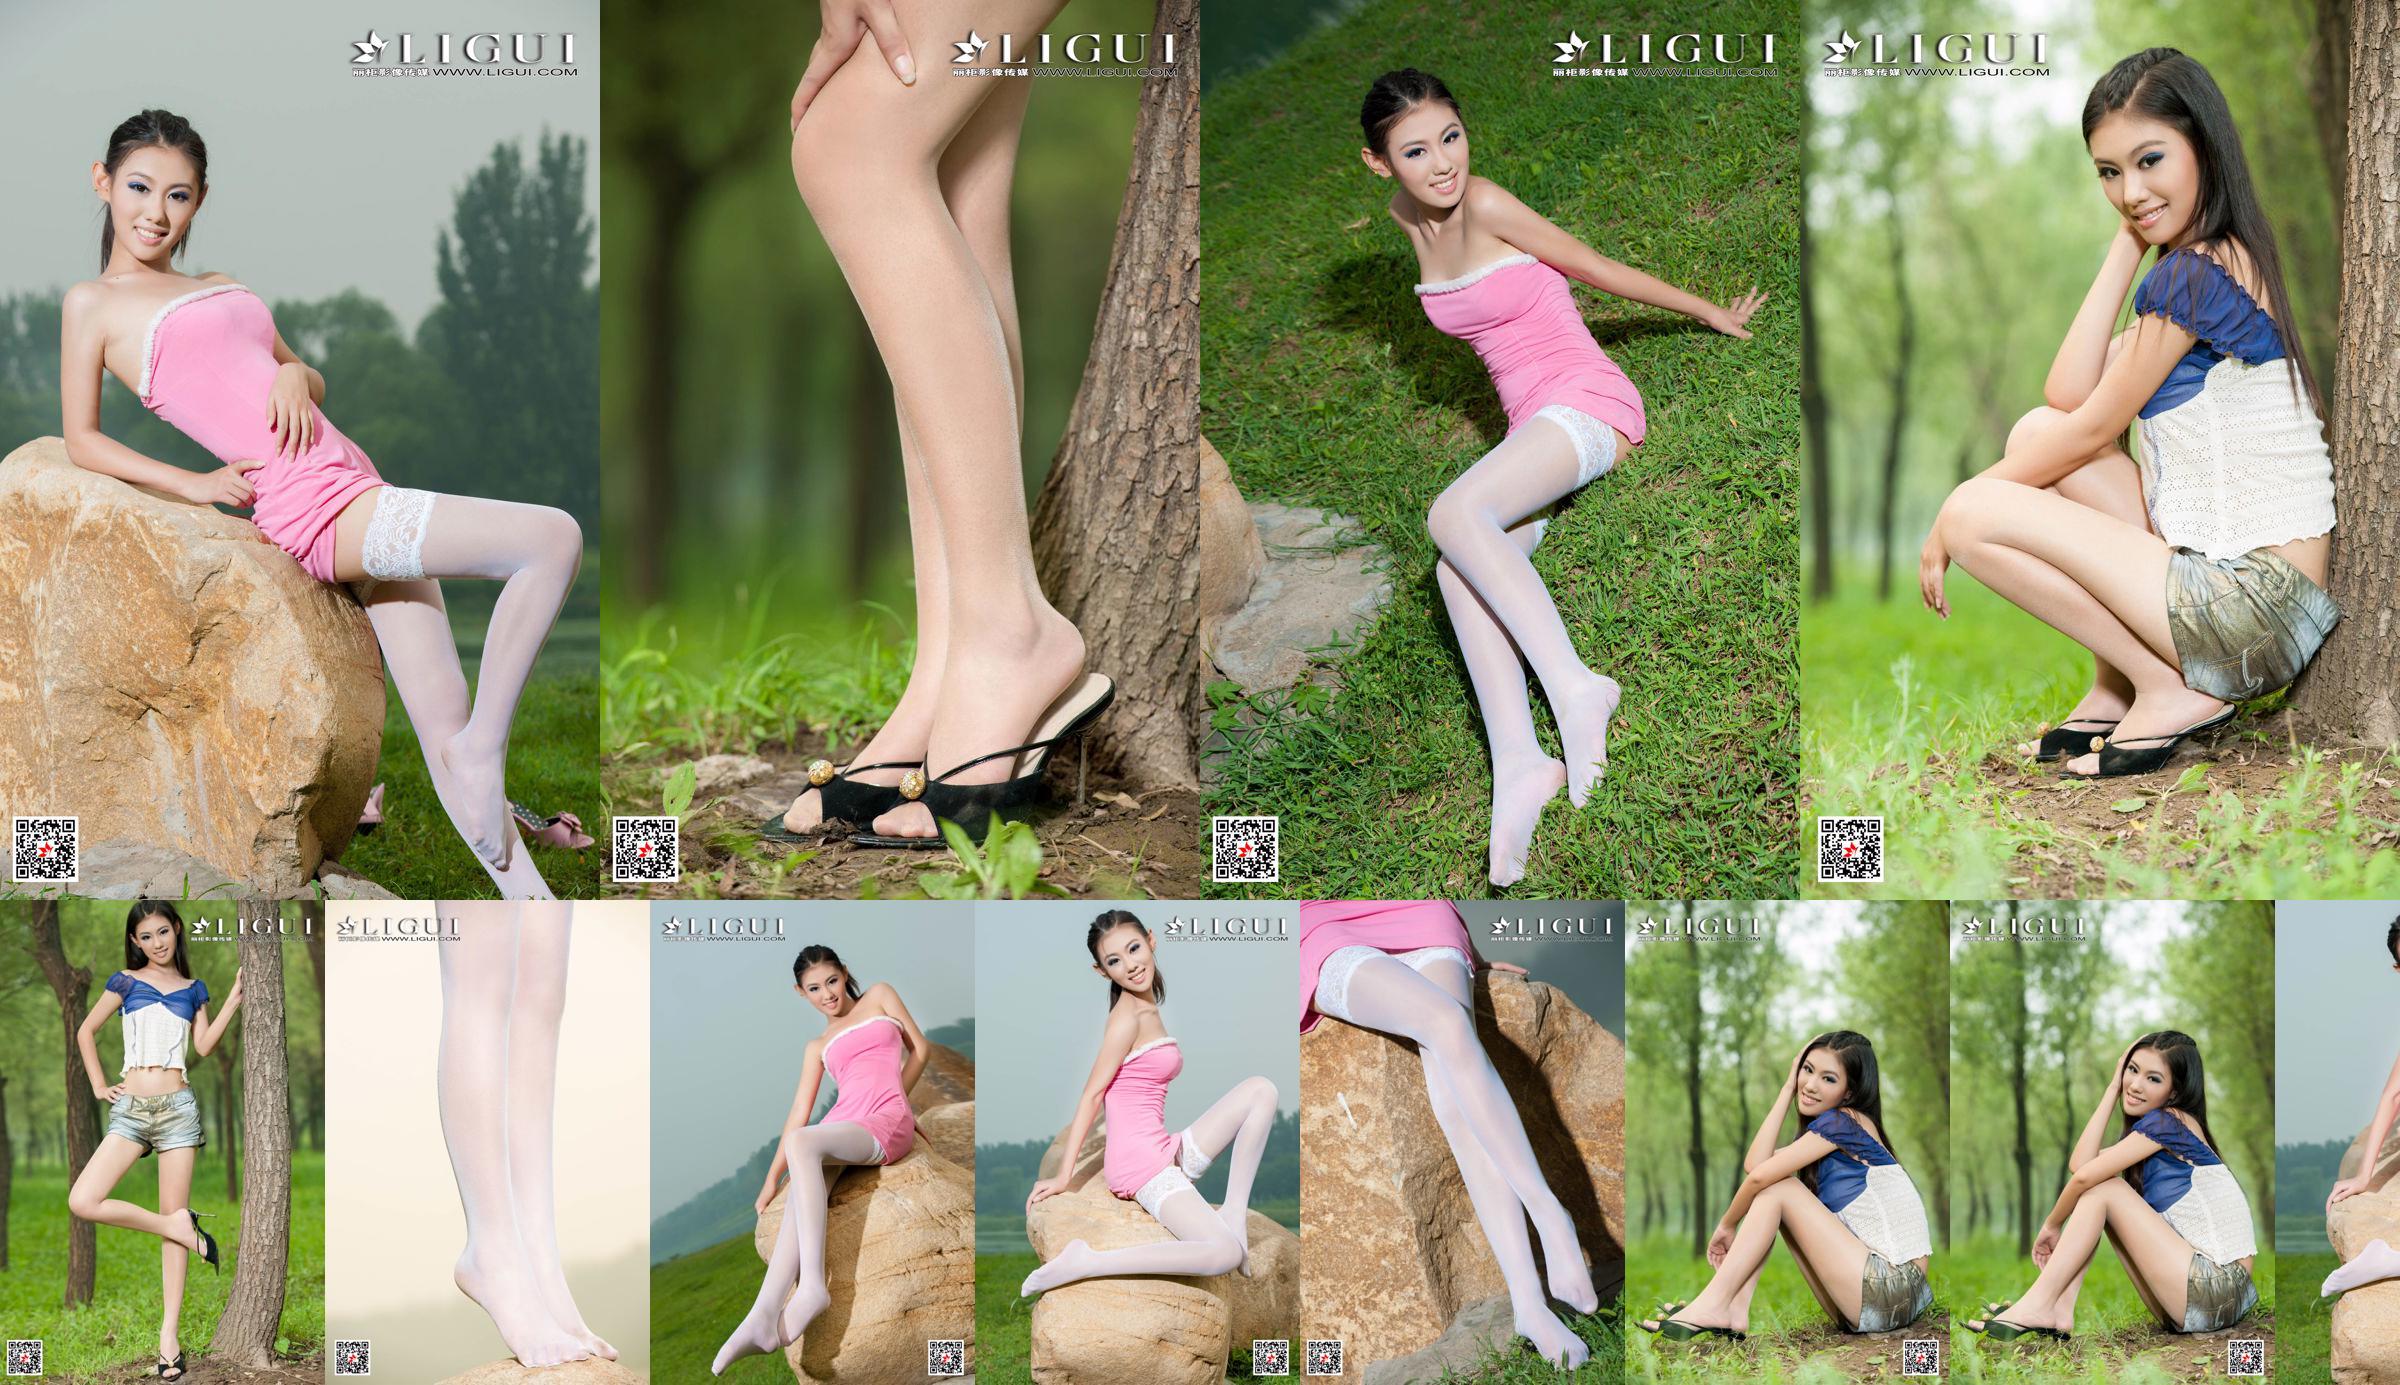 [丽 柜 Ligui] Modelo Wei Ling "Chica de piernas largas" Hermosas piernas No.0cc3b8 Página 1